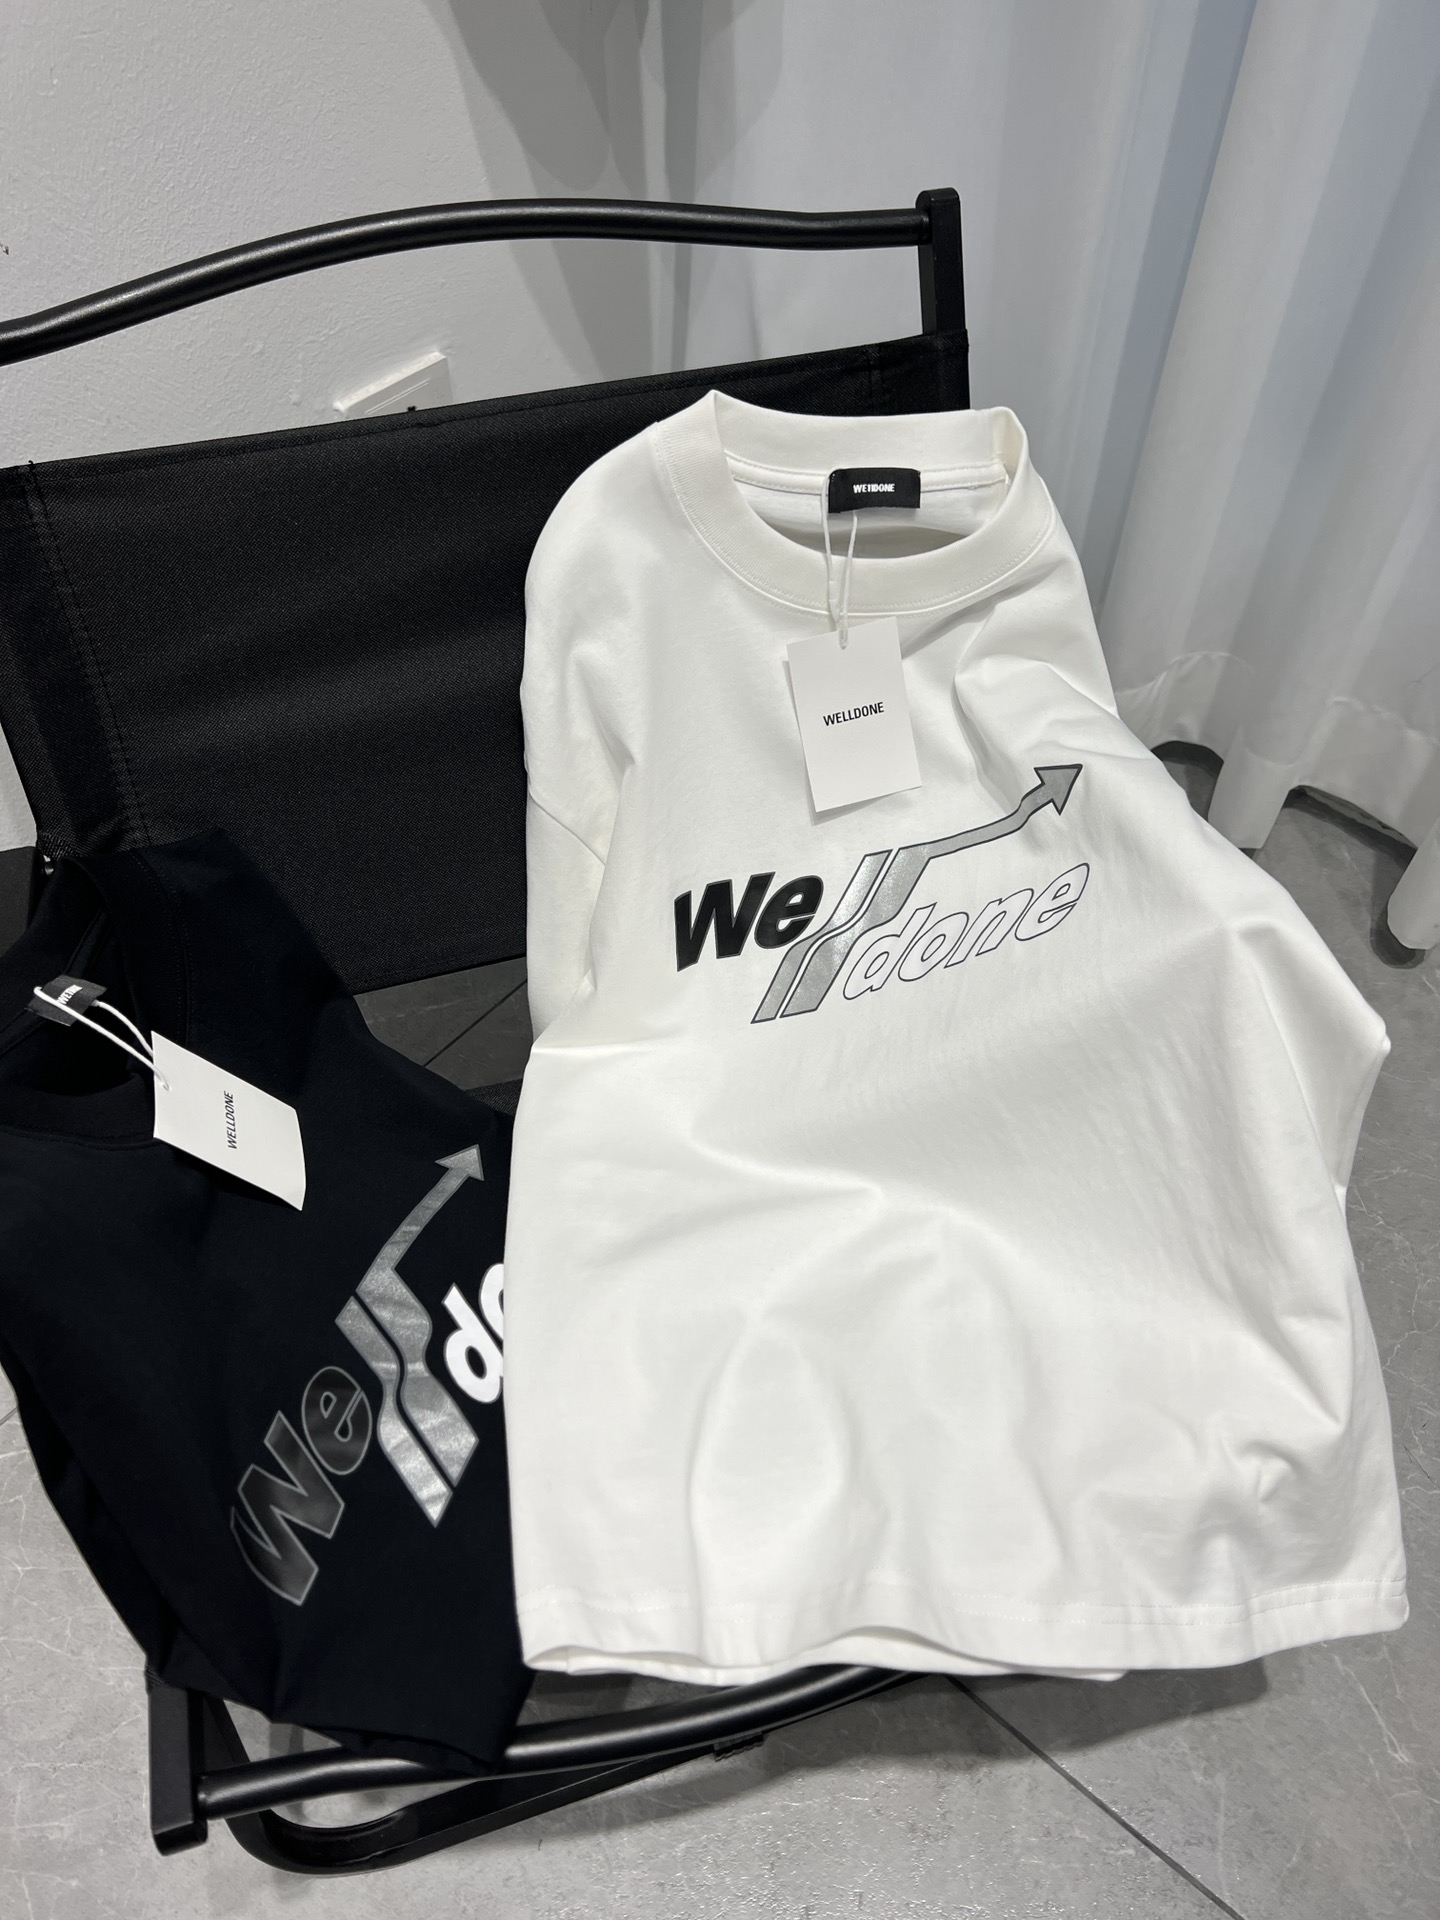 WE11DONE 限定販売 最高品質 ウェルダン tシャツ激安通販 半袖 トップス 純綿 柔らかい ロゴプリント ホワイト_4